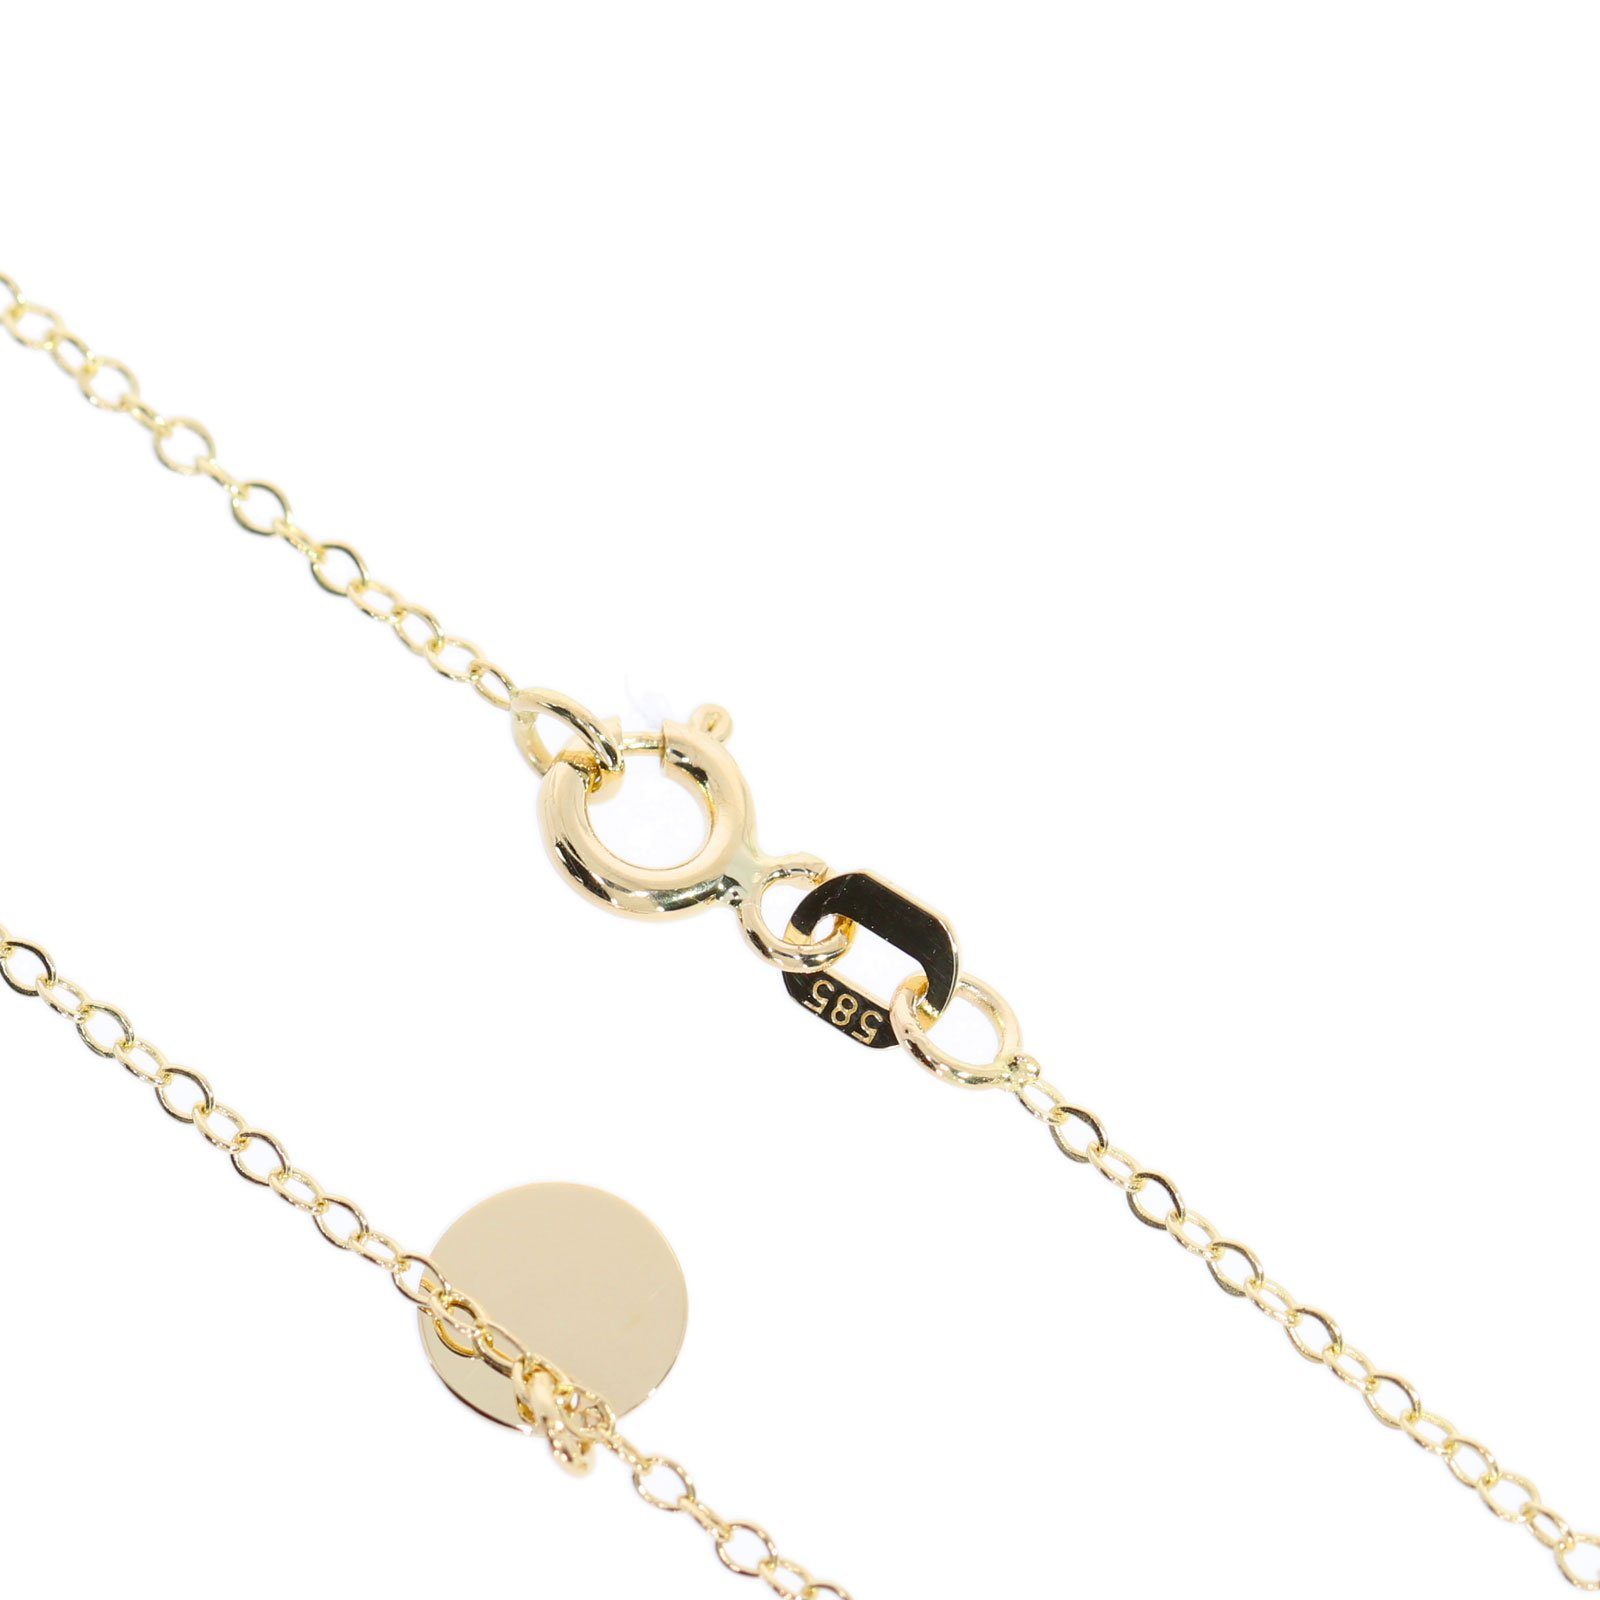 Damen Schmuck Stella-Jewellery Goldkette Damen Halskette mit 7 Plättchen 585 Gold Kreis Kette Collier Schmuck (inkl. Etui), 585 